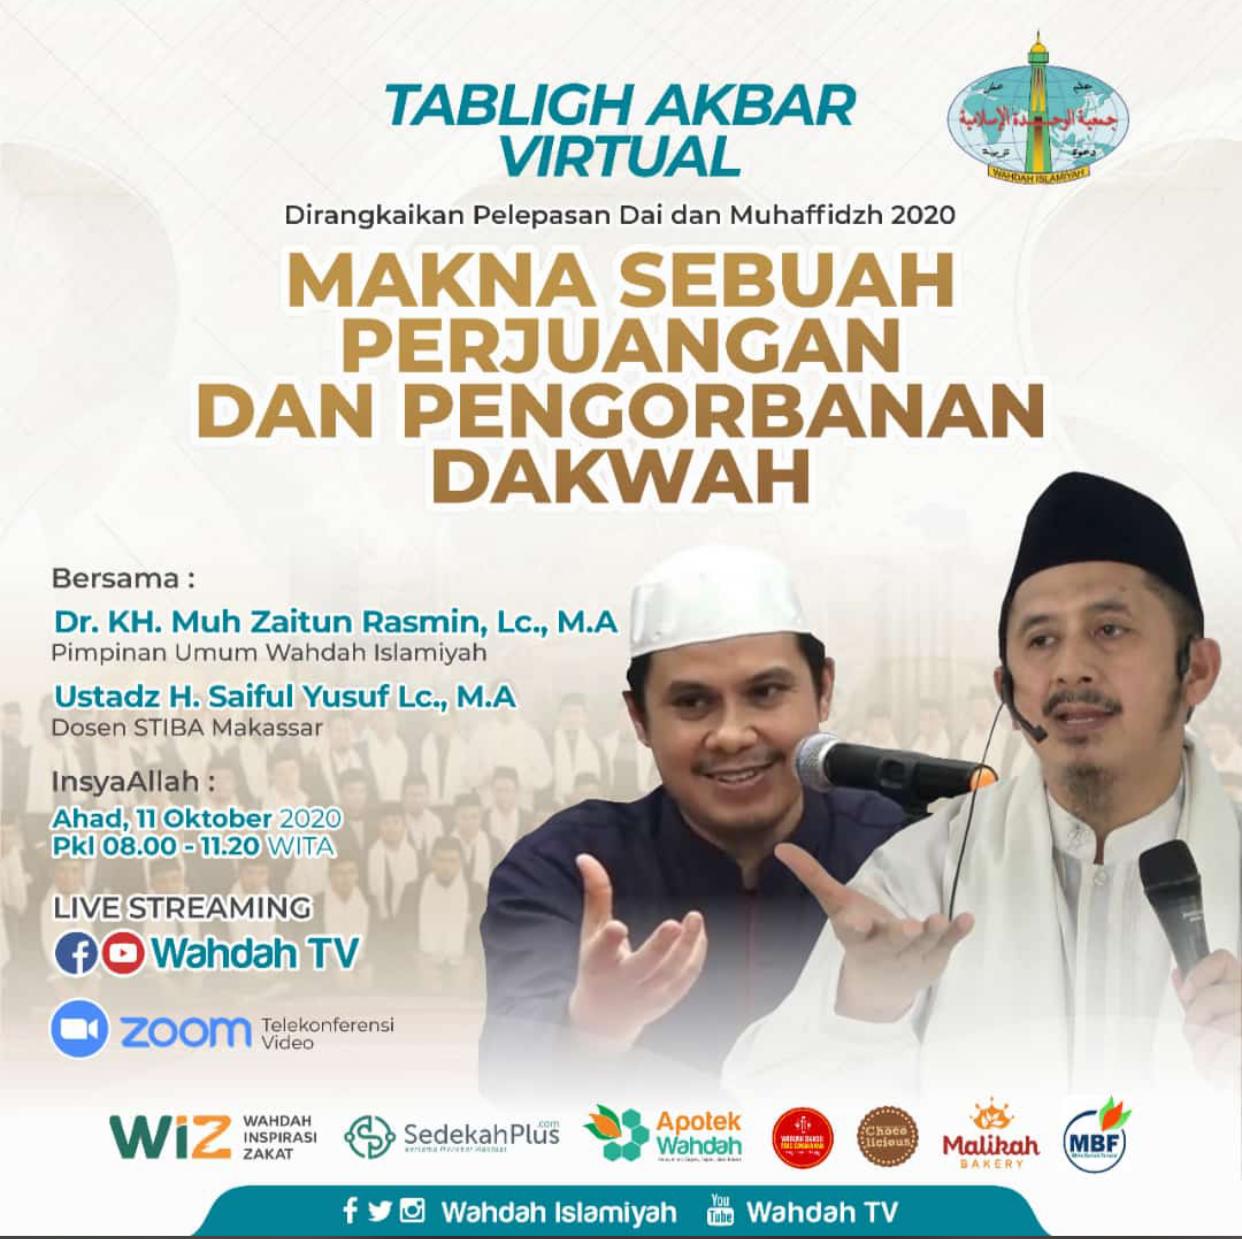 Tabligh Akbar Virtual Wahdah Islamiyah  Siap Kirim  150 Da’iyah Muslimah di Tengah Pandemi ke Seluruh Nusantara